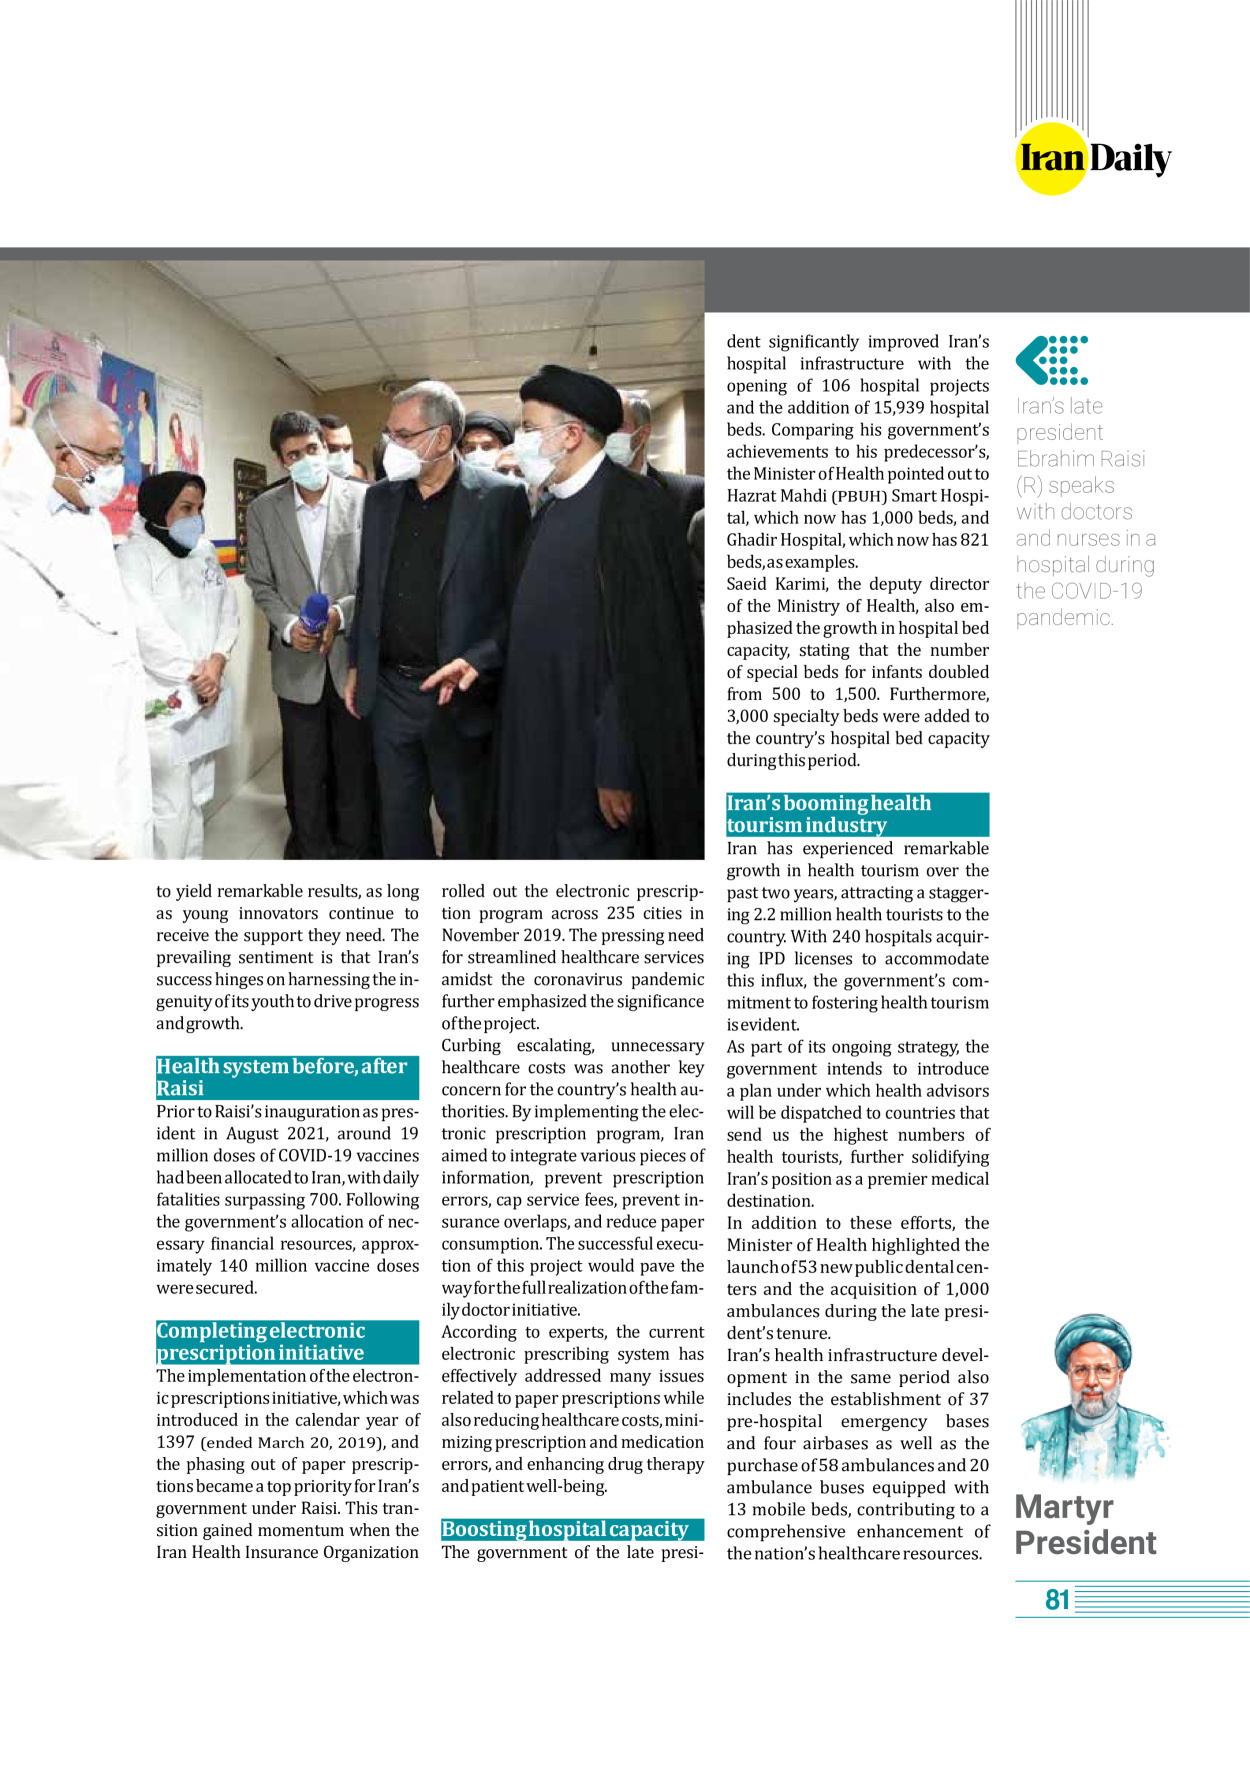 روزنامه ایران - ویژه نامه وِزه نامه چهلم شهید رییسی( انگلیسی) - ۱۷ تیر ۱۴۰۳ - صفحه ۸۱